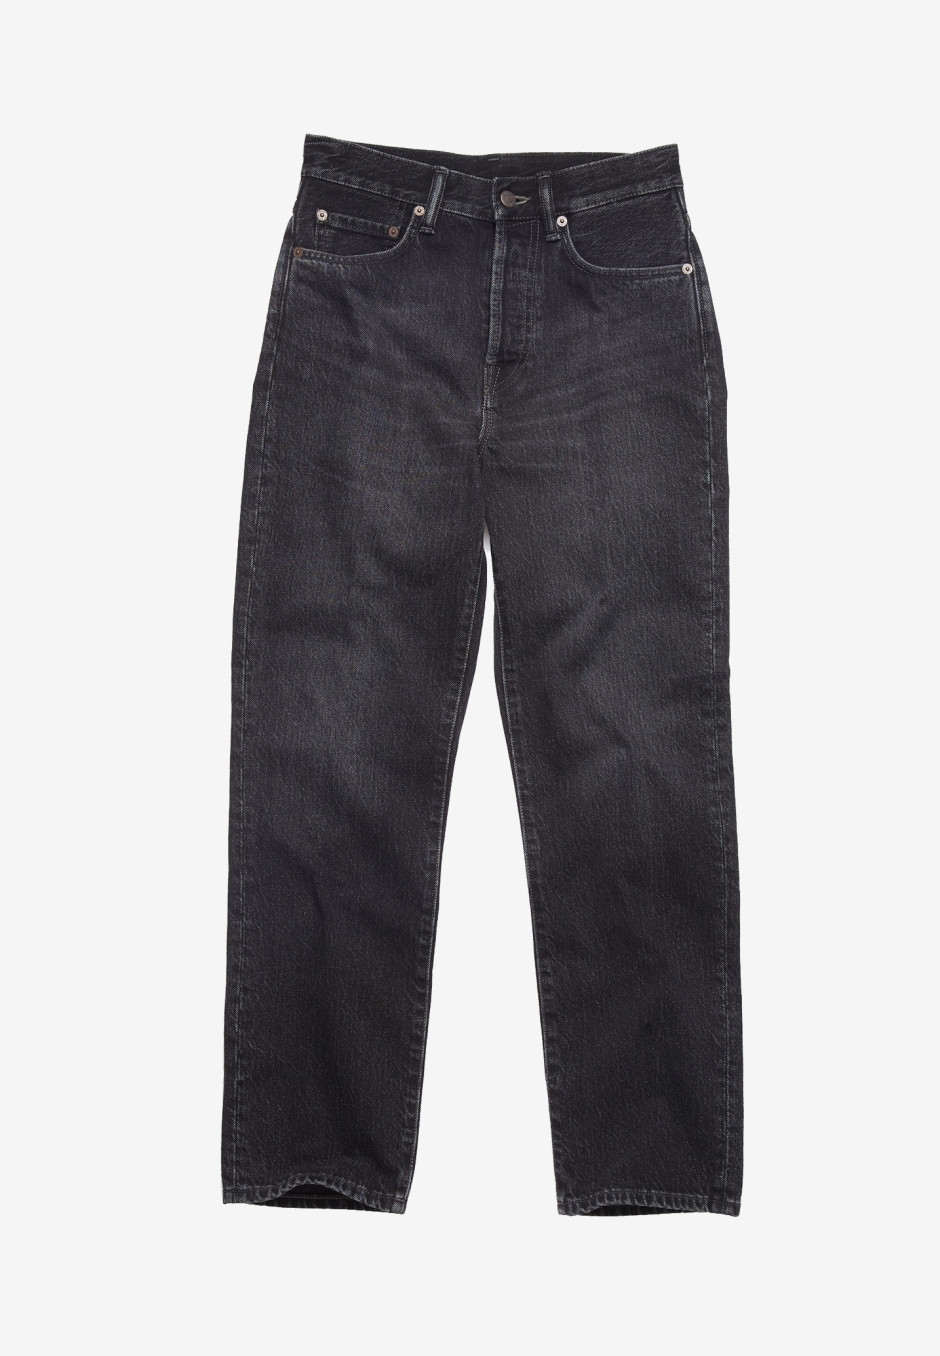 Acne Studios Regular Fit Jeans Mece Vintage Black